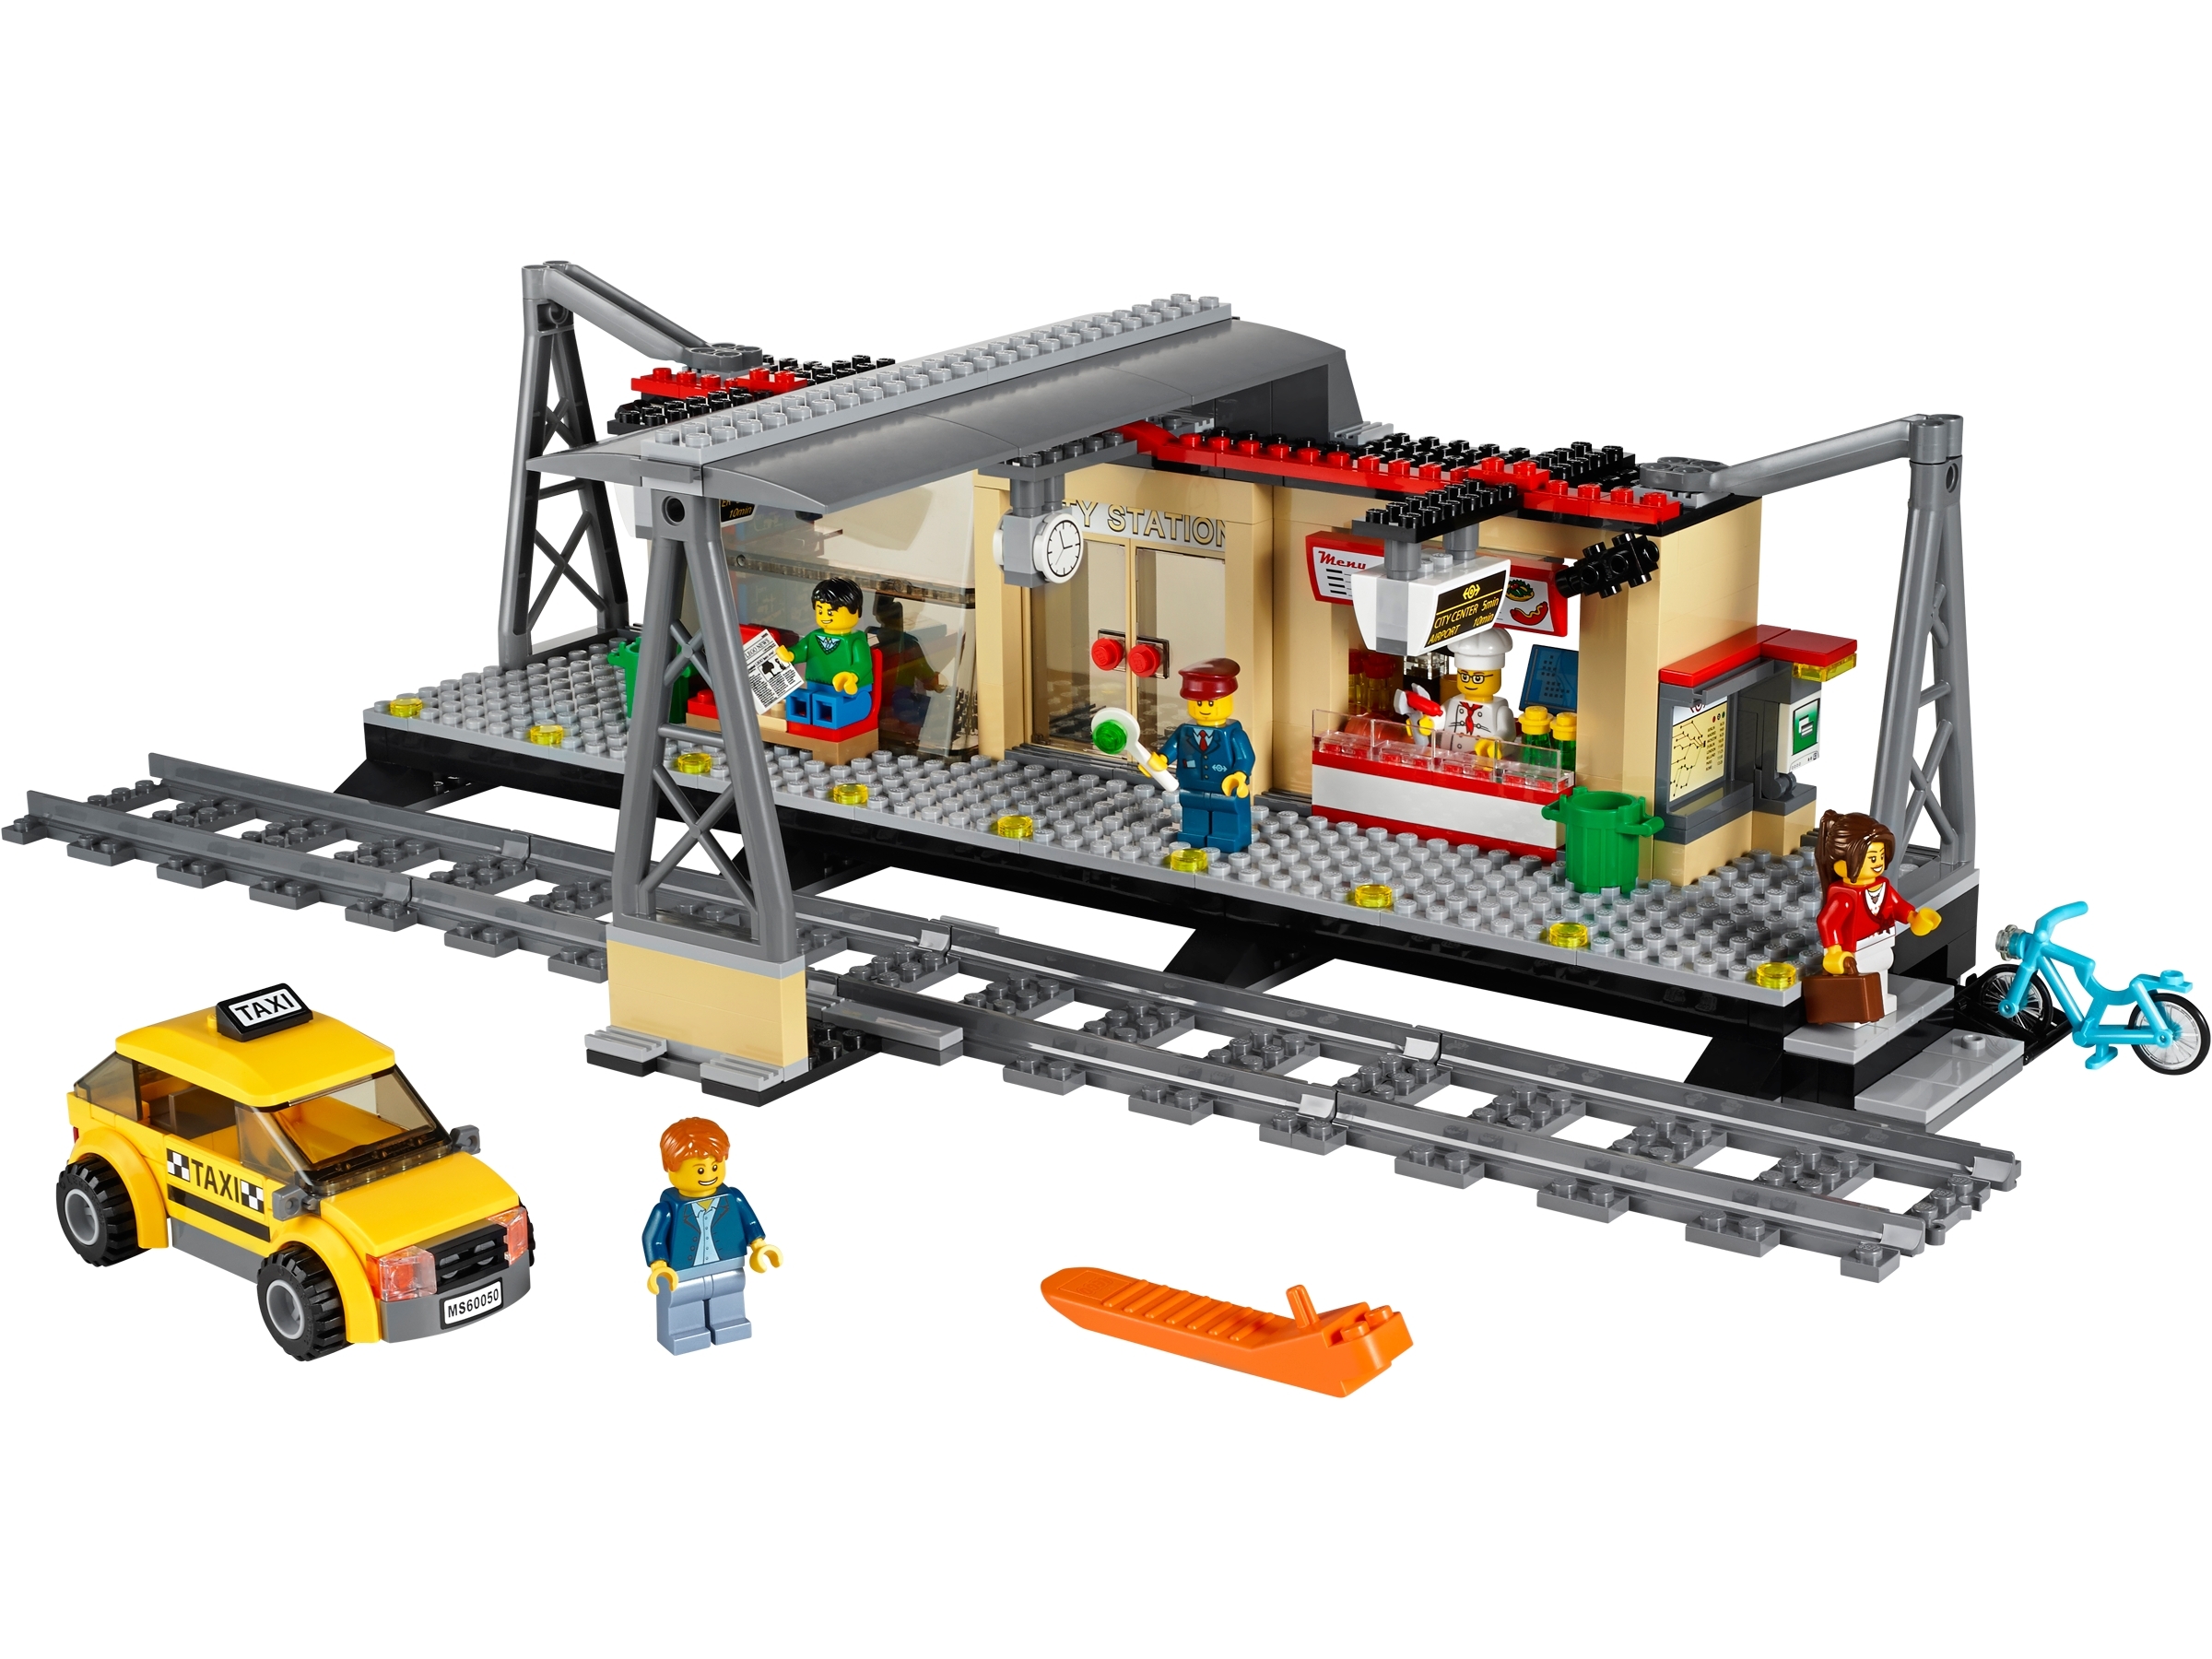 Vanding Fantastisk dramatisk Train Station 60050 | Other | Buy online at the Official LEGO® Shop US